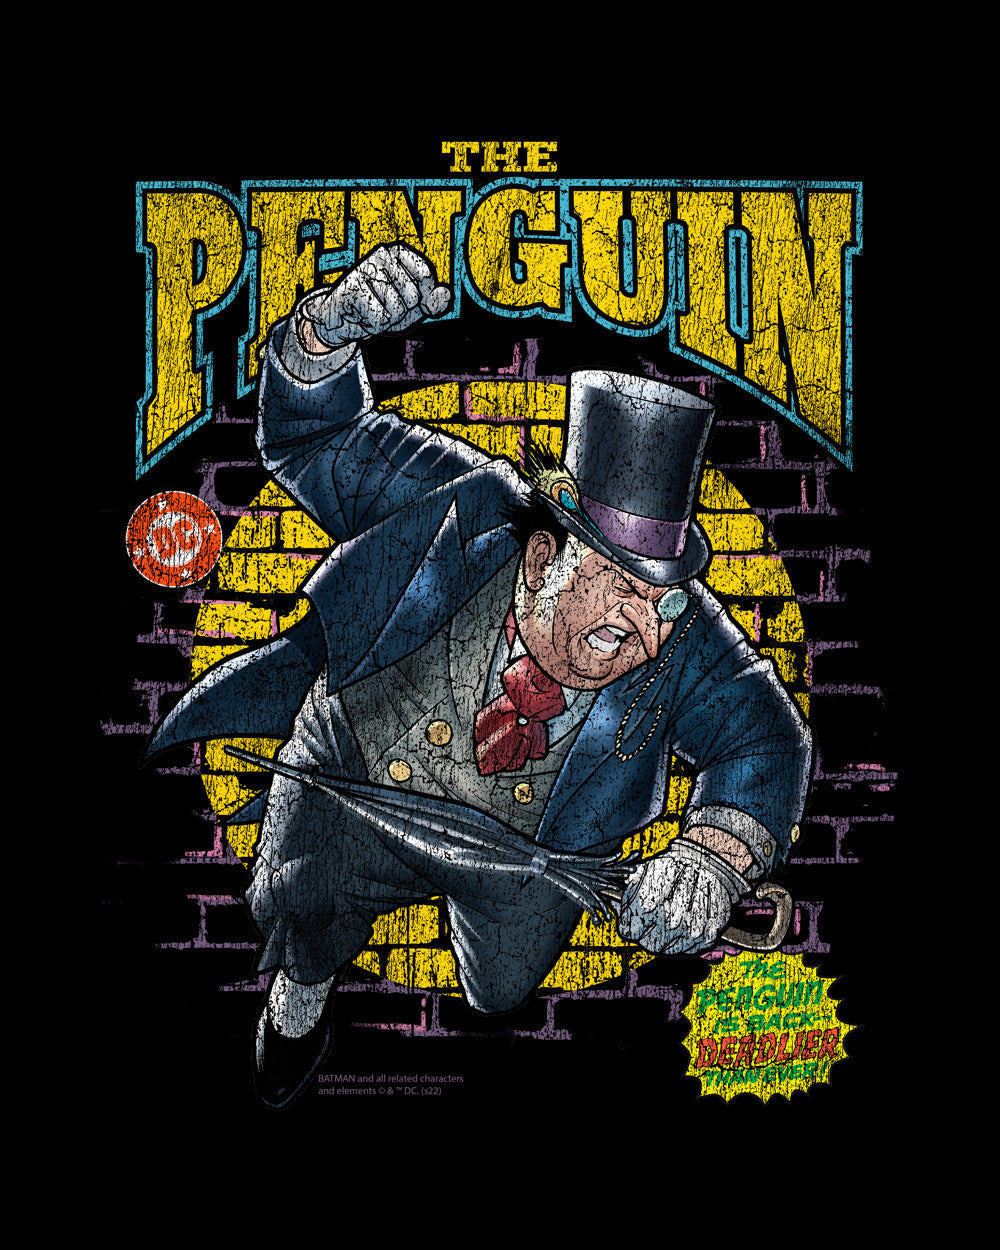 DC Comics The Penguin Villain Batman Geek Nerd Superhero Comic Book Officially Licensed Cotton  T-Shirt